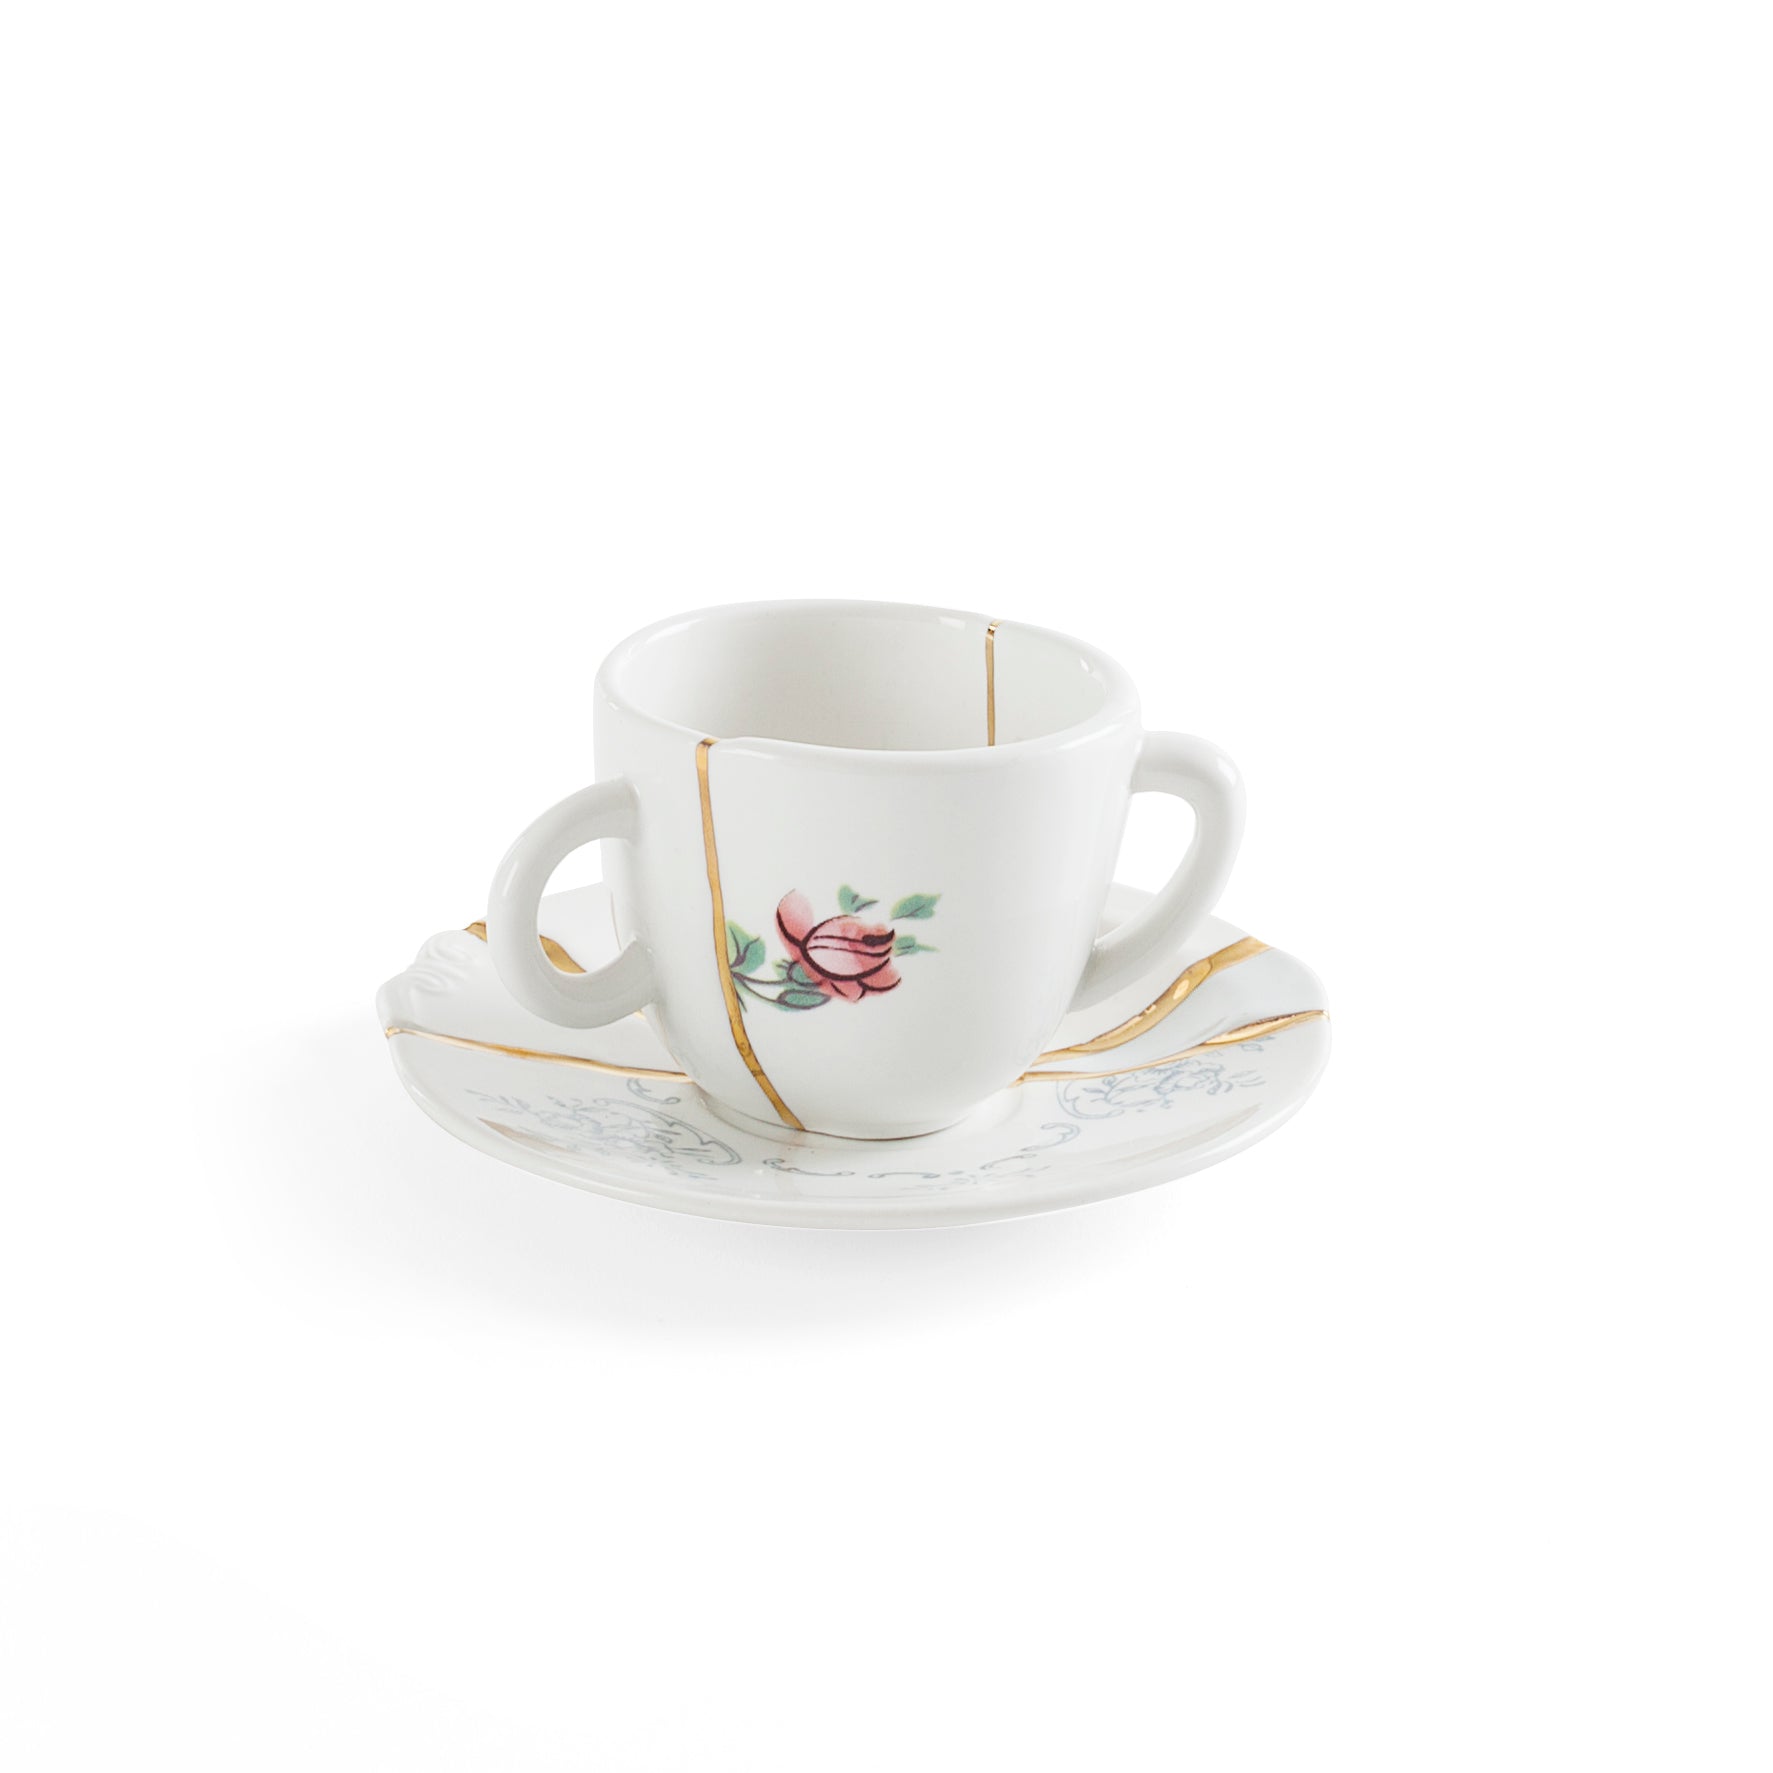 Seletti  Kintsugi n°1 Tazzina caffe' con piattino in porcellana